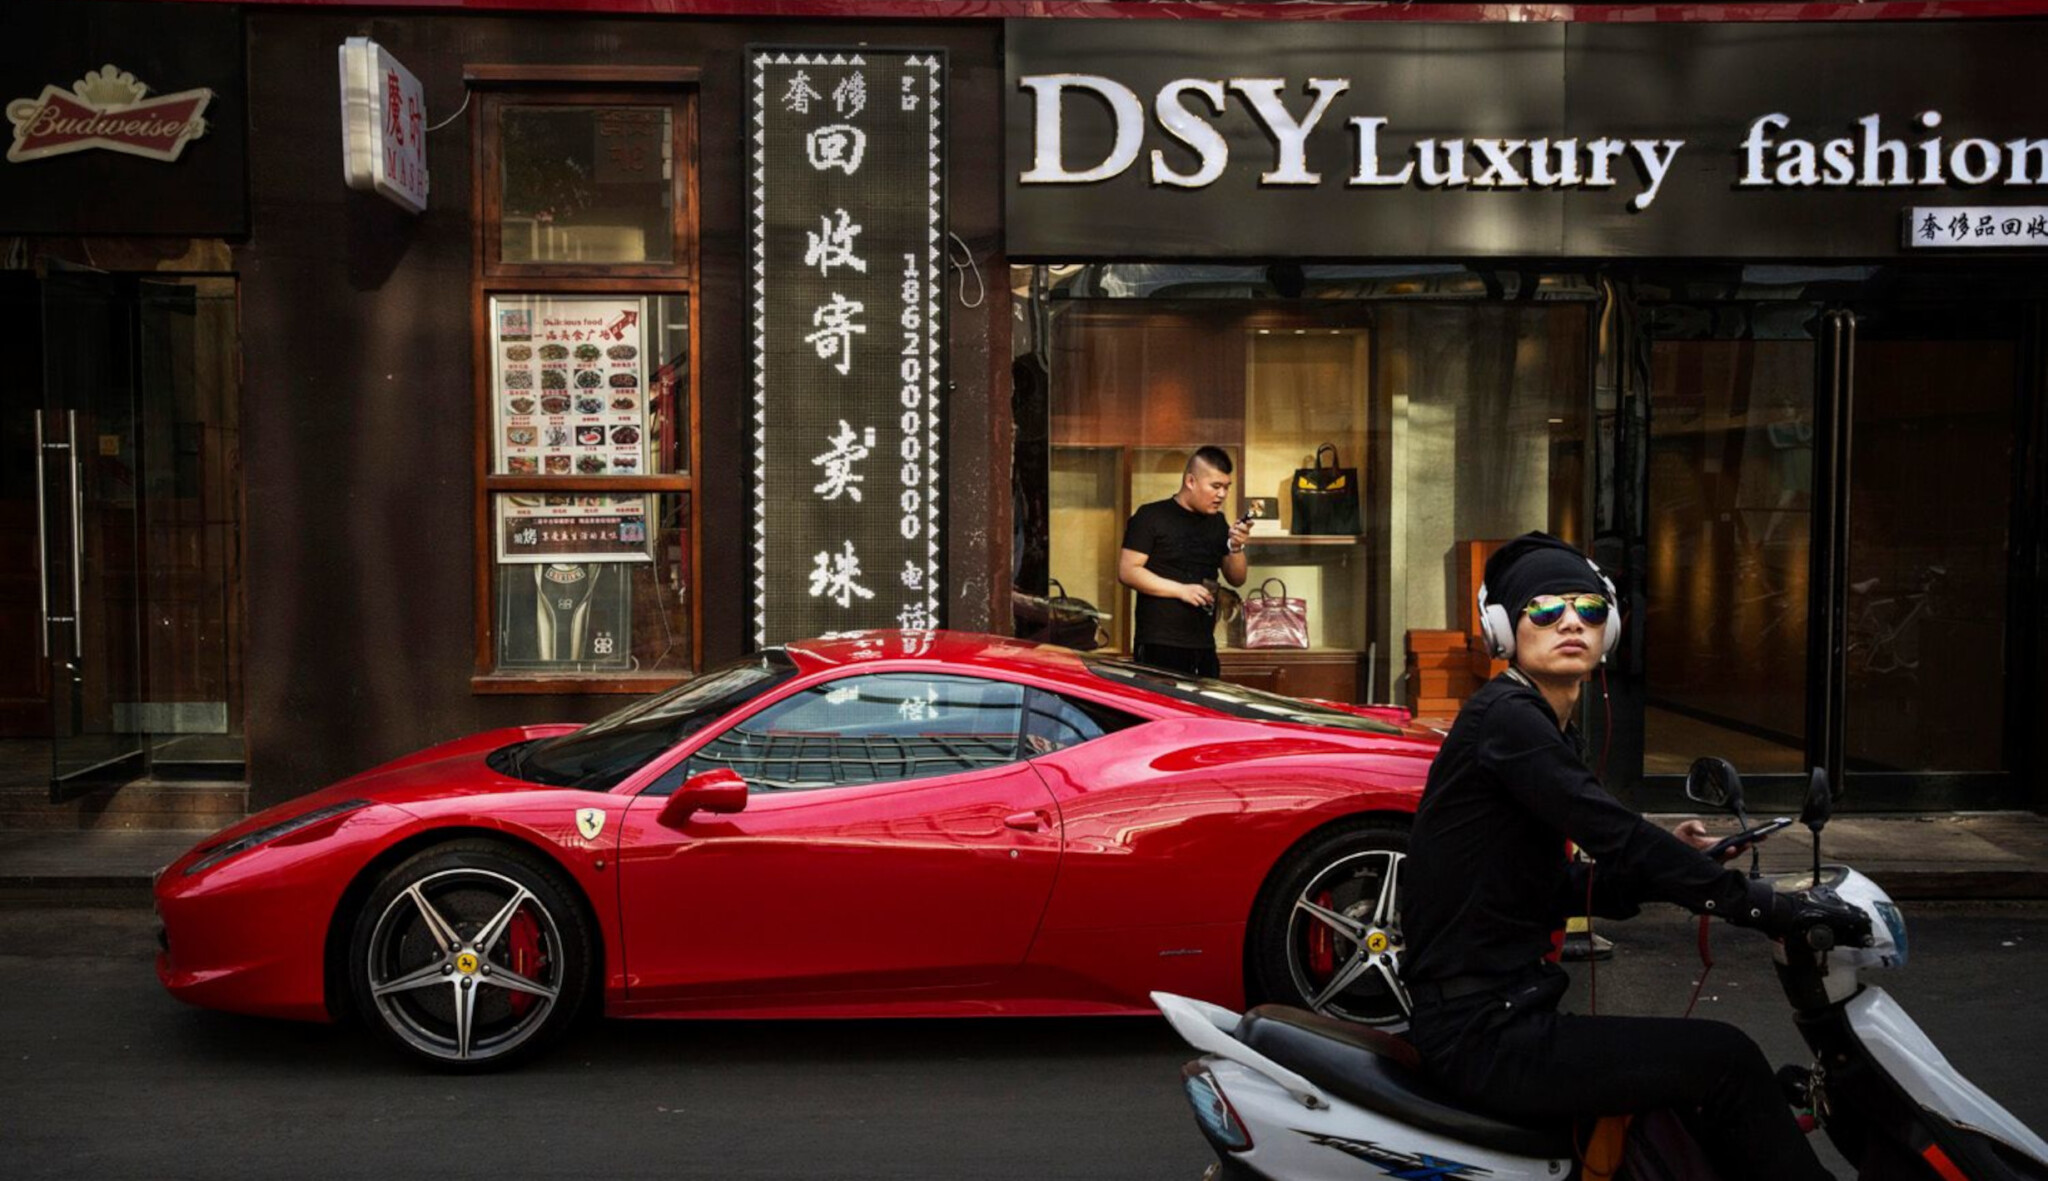 Stačil jeden projev. Čína kýchla a prodej luxusního zboží dostal zápal plic